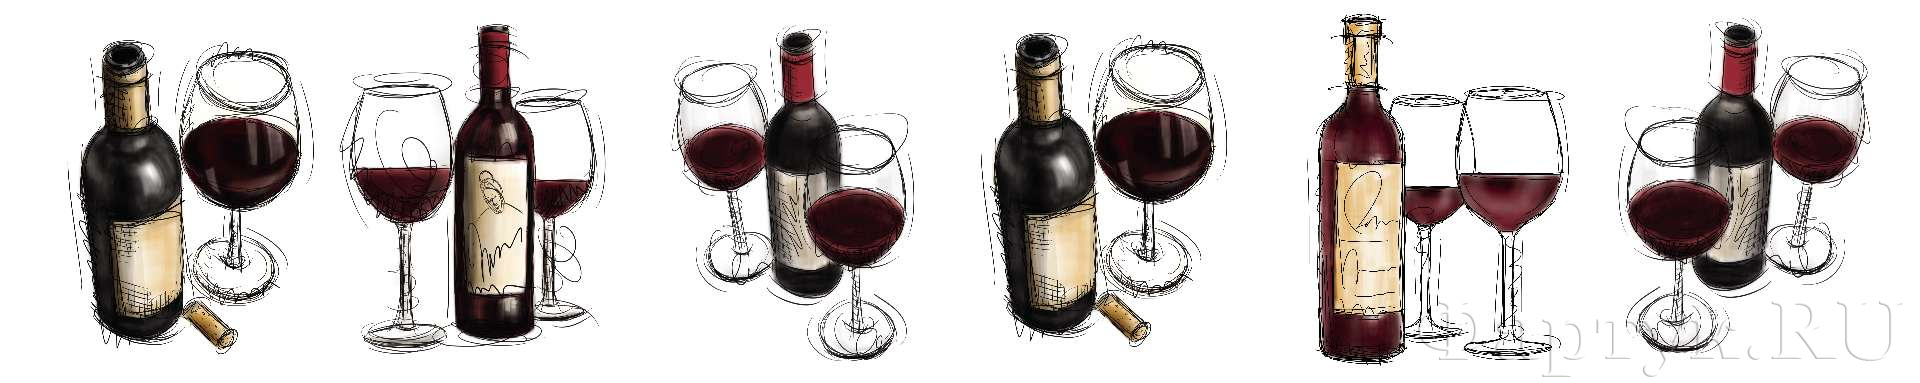 Рисованные бутылки вина